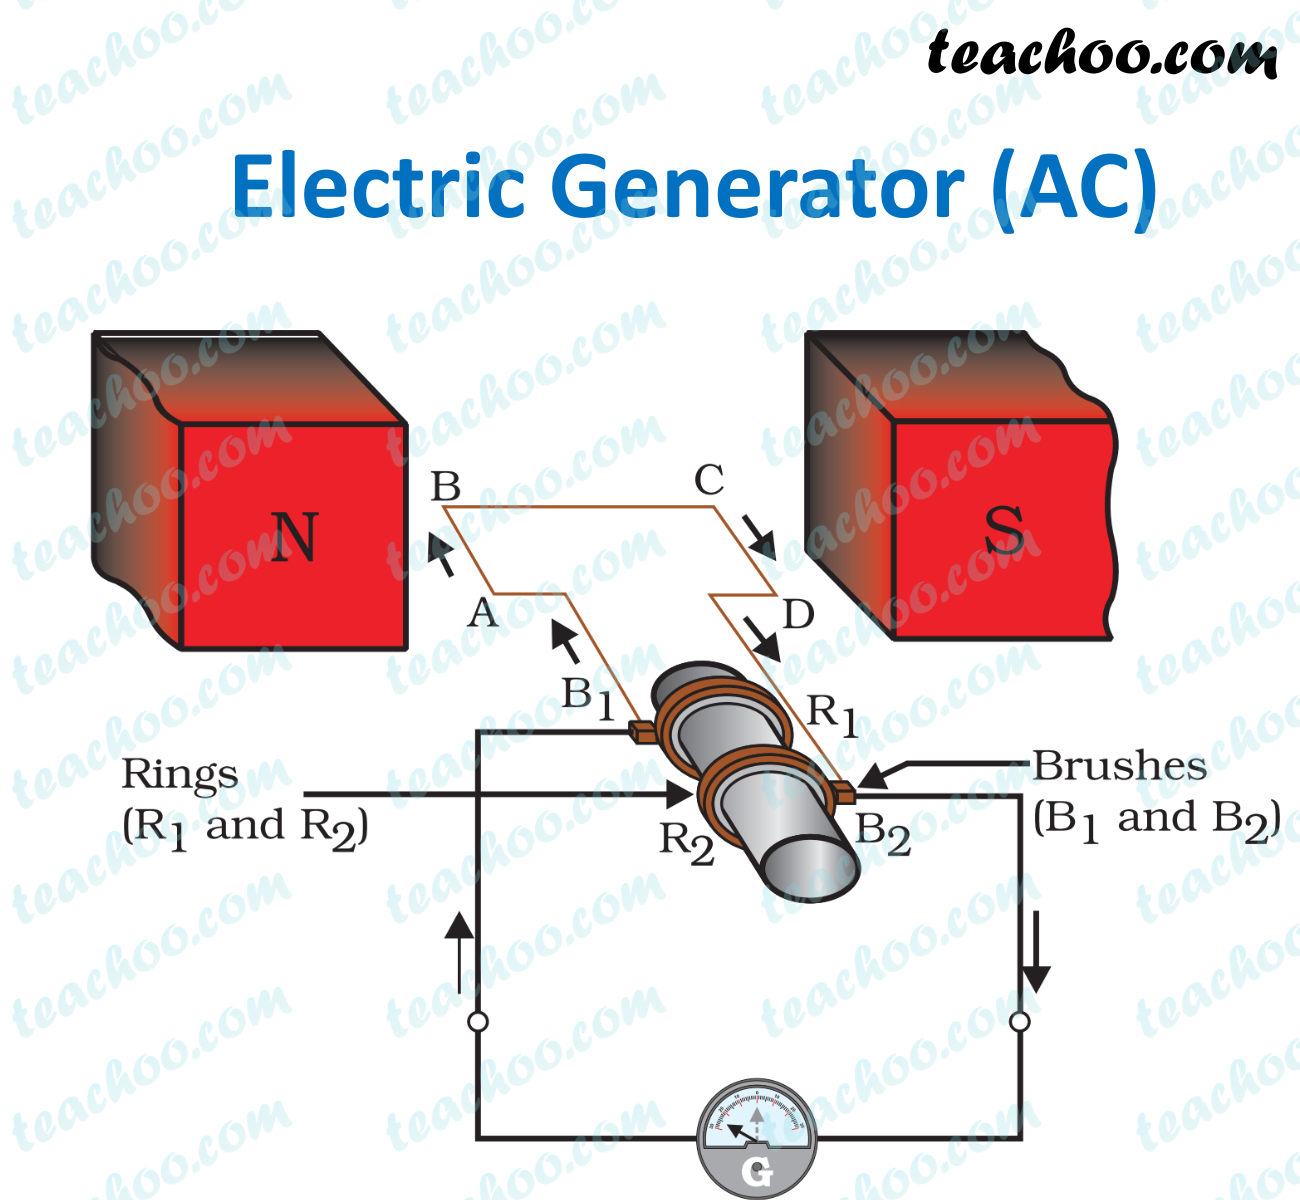 electric-generator---teachoo.jpg